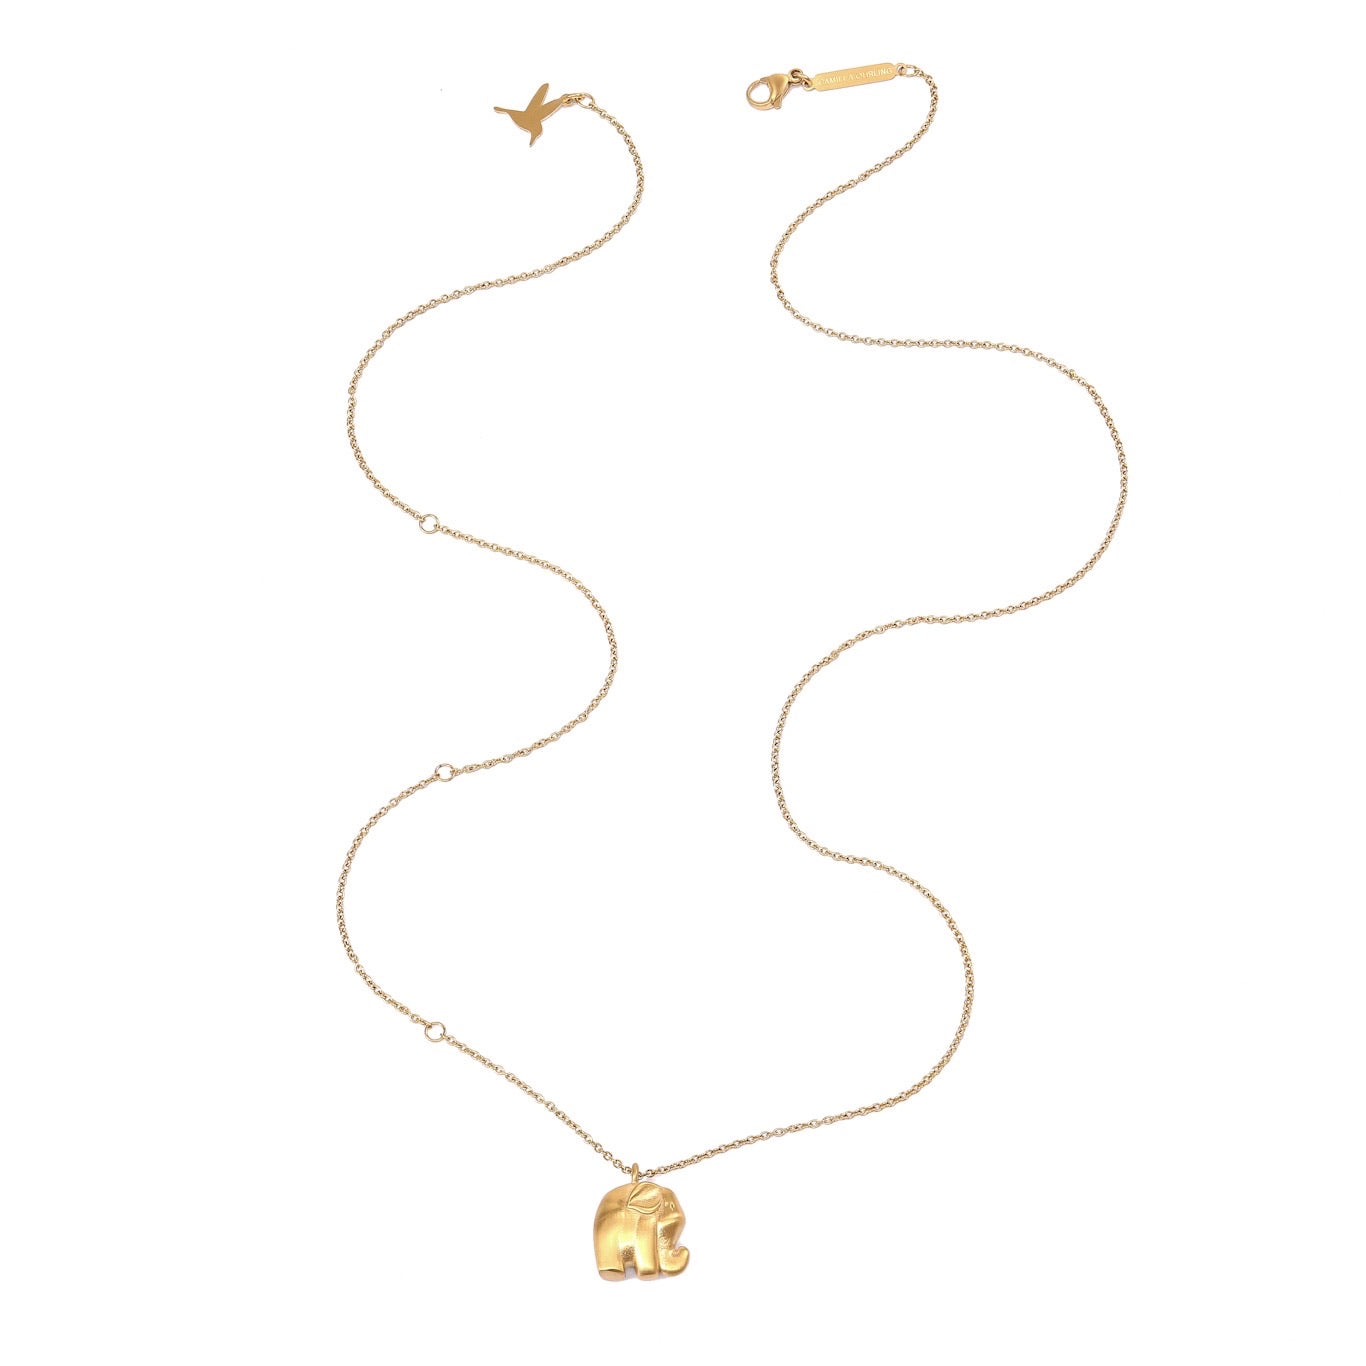 Mama Elephant necklace